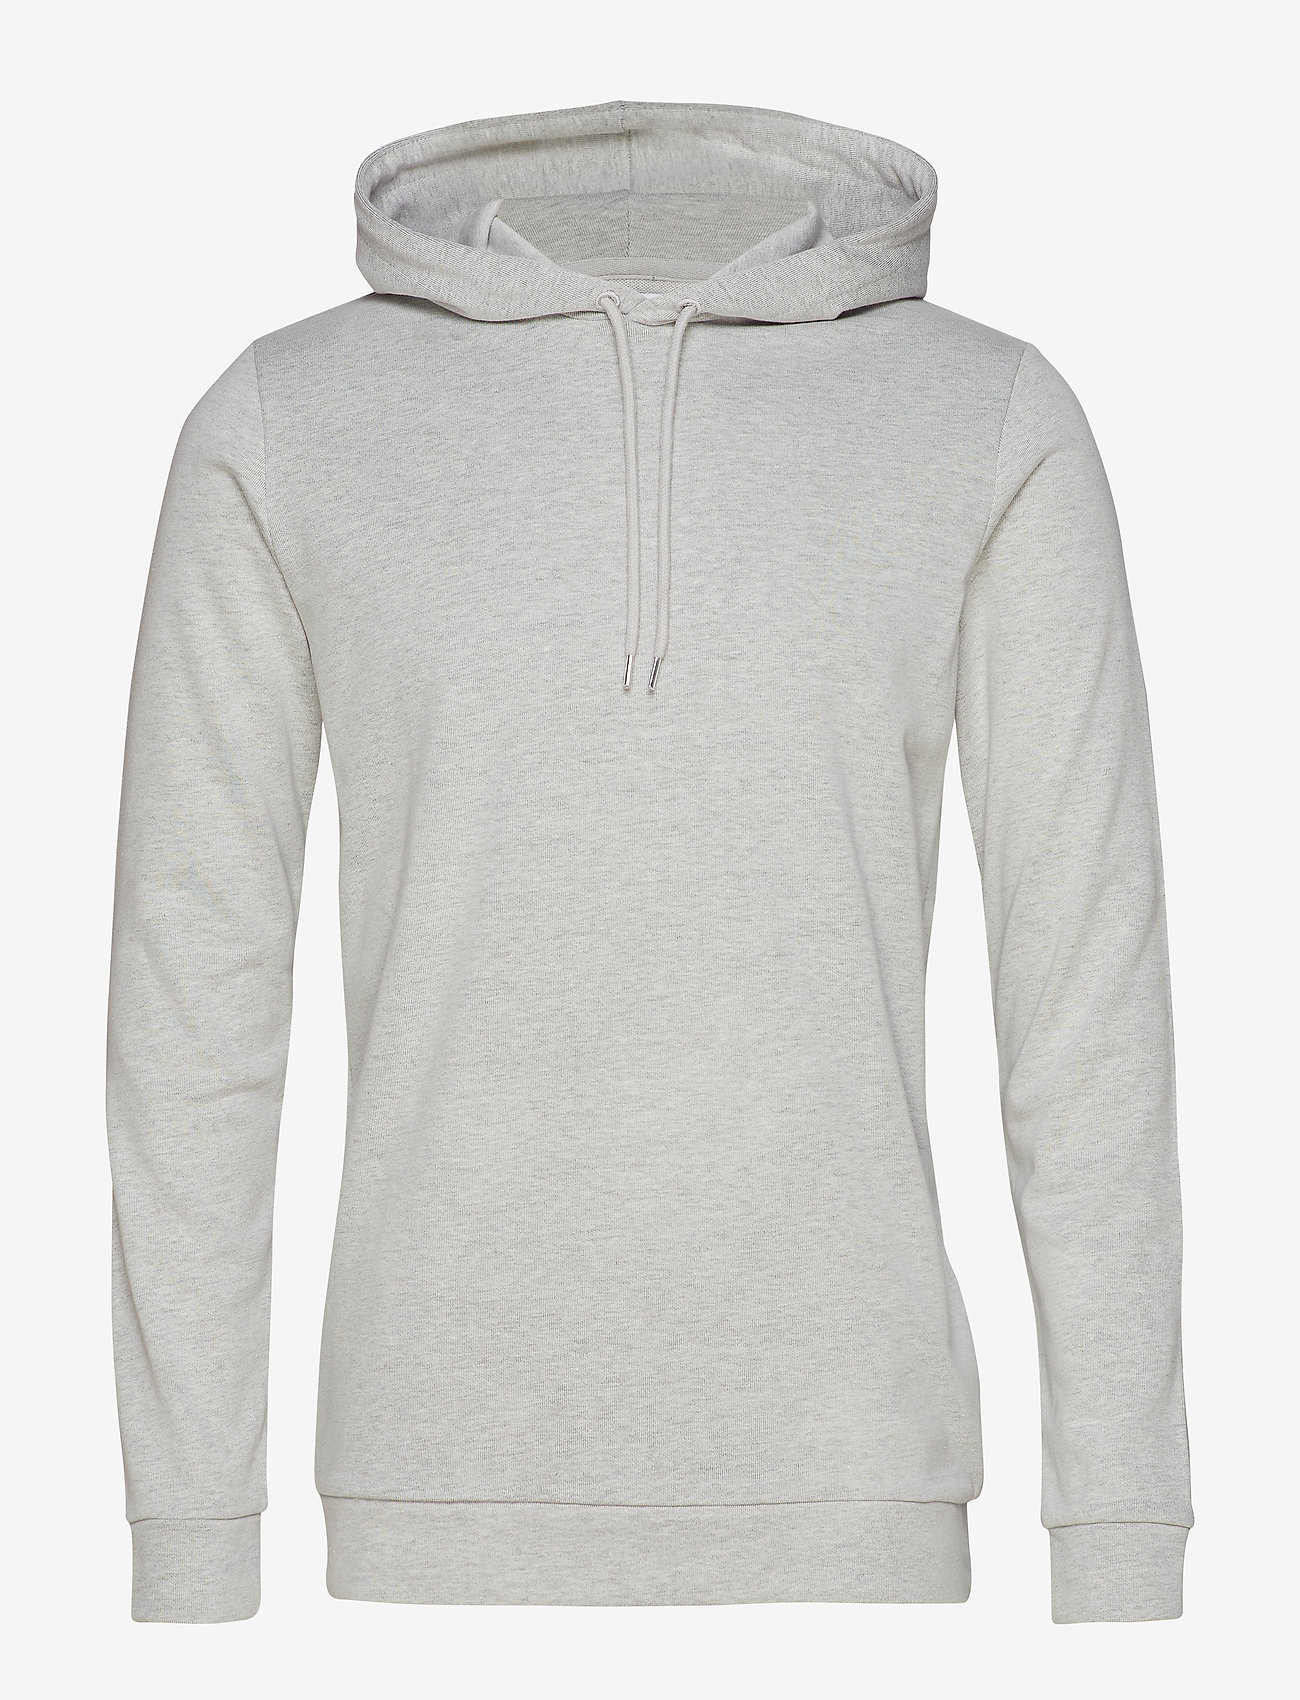 light grey hoodie